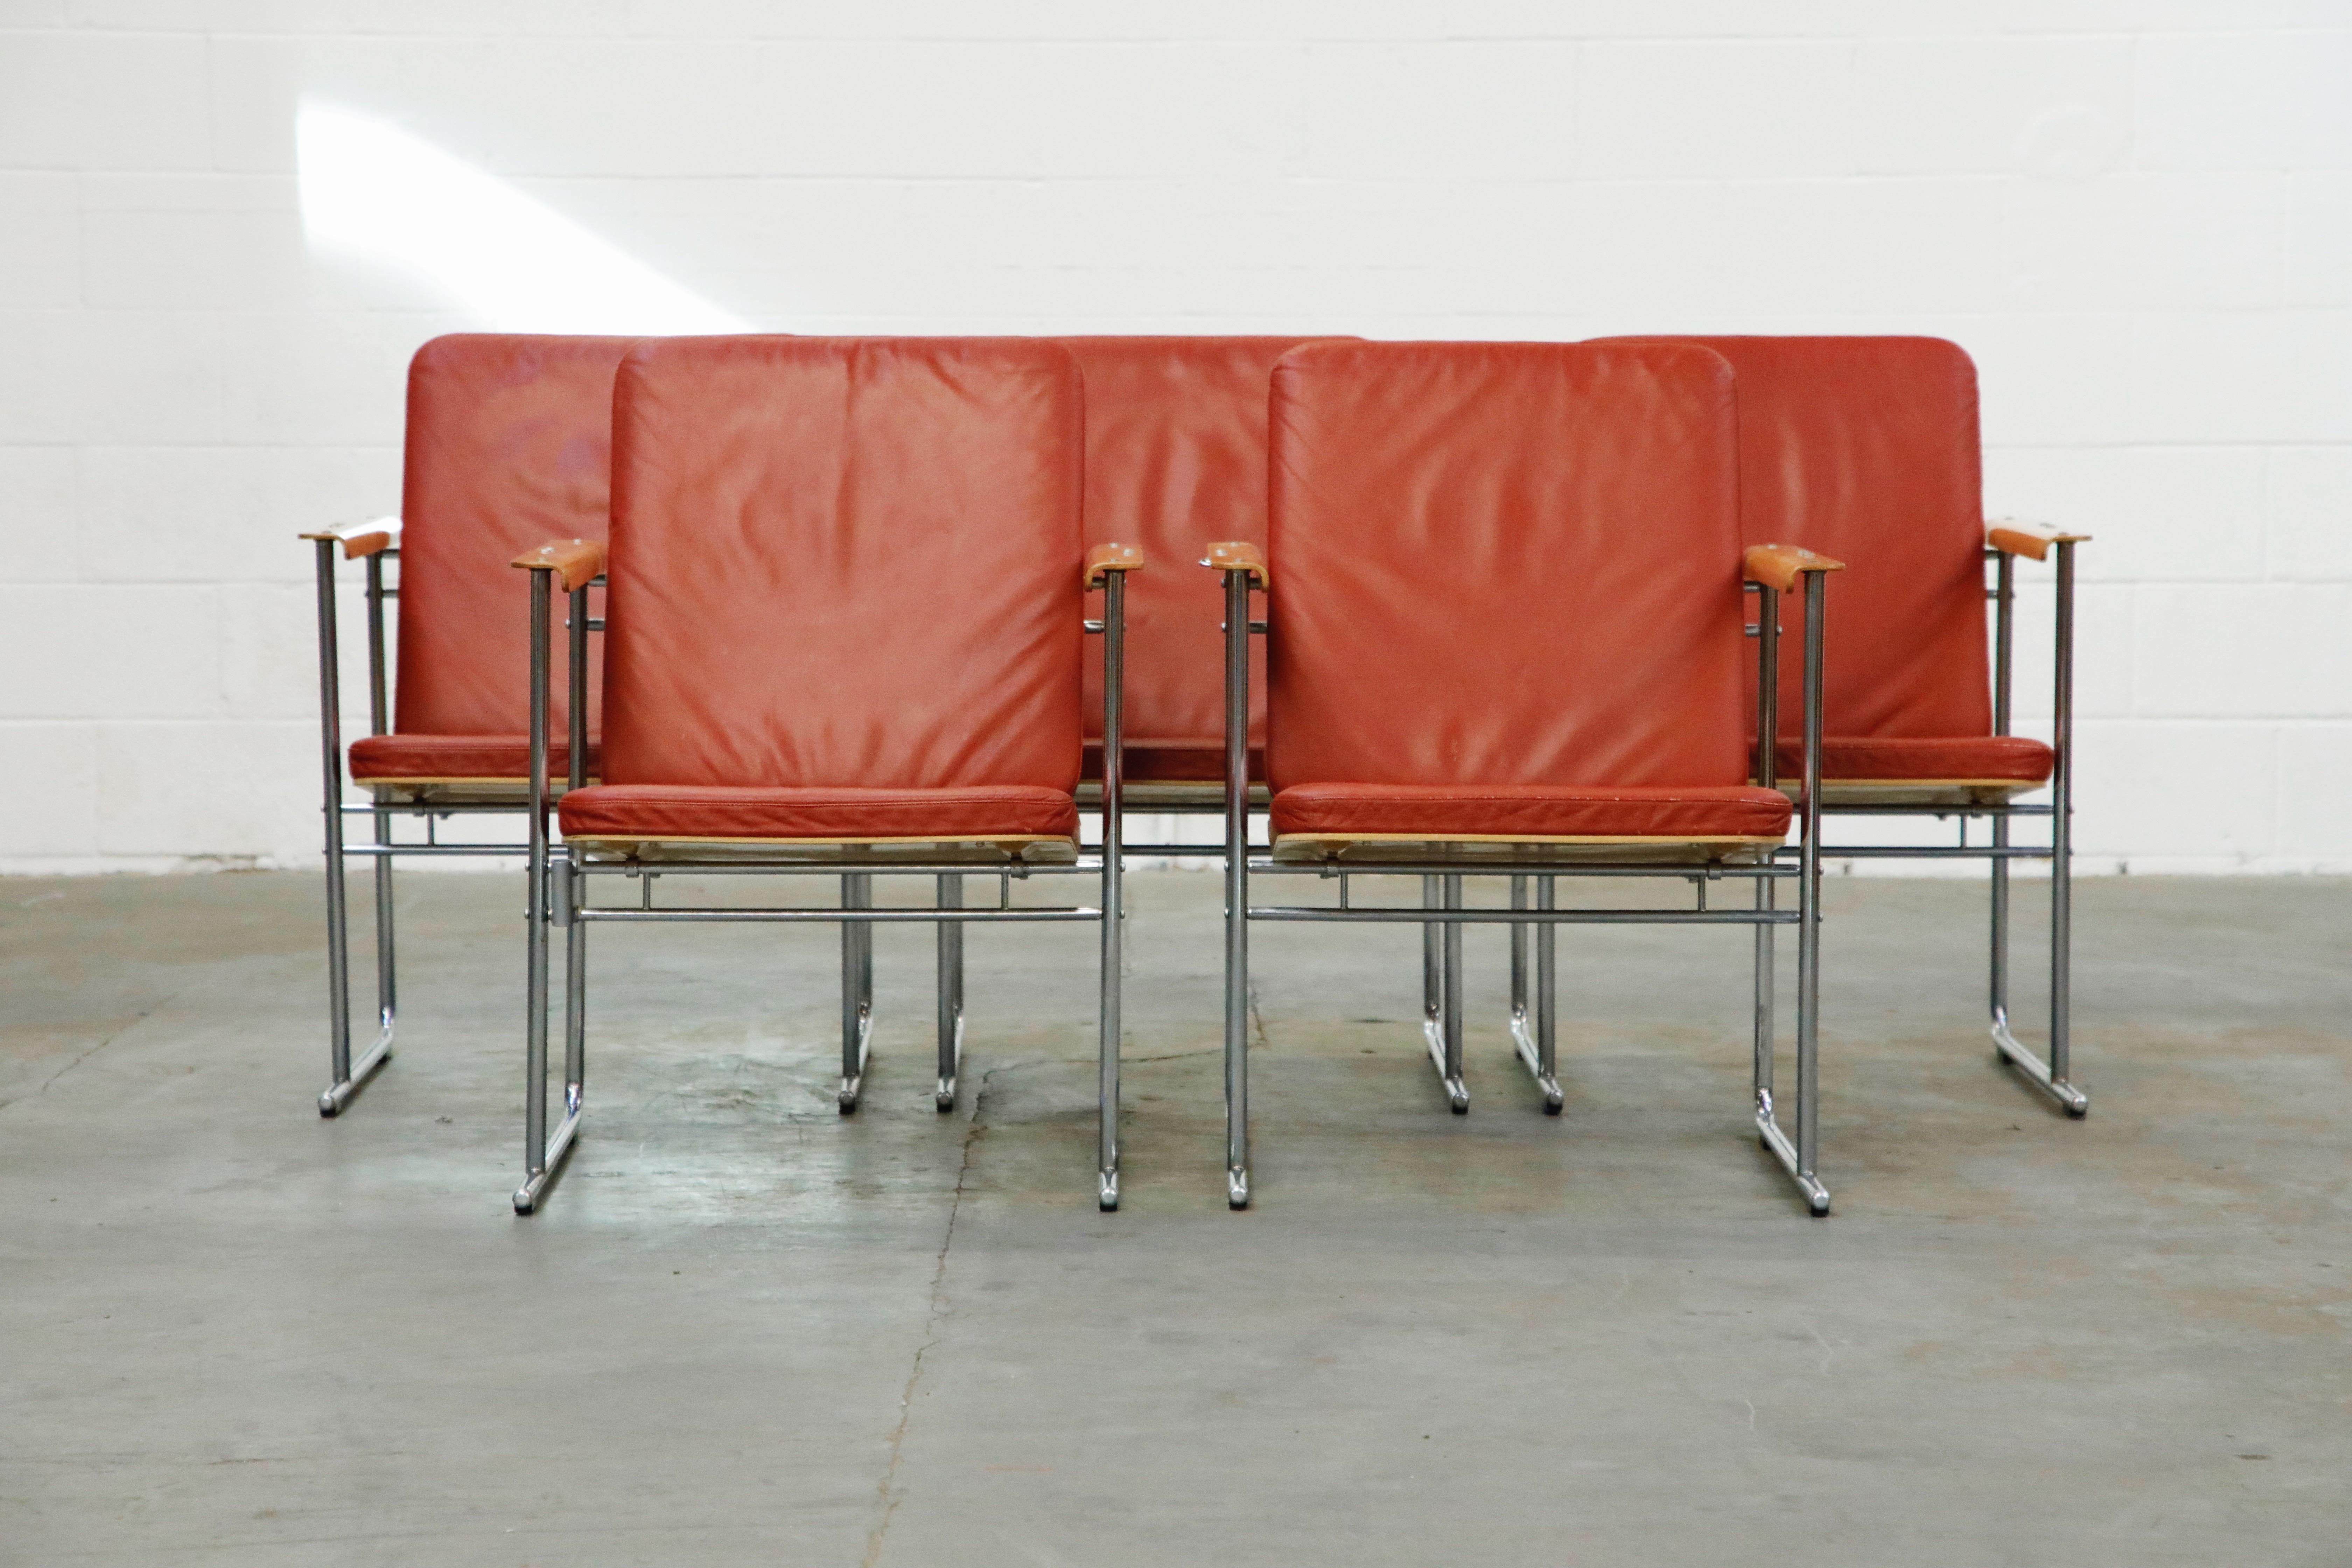 Incroyable ensemble de cinq fauteuils de salon de collection 'Skaala' par Yrjo¨ Kukkapuro pour Avarte, fabriqué en Finlande, vers 1970. Coussins d'assise en cuir rouge bordeaux d'origine, cadres en bouleau et en acier tubulaire avec pieds traîneaux